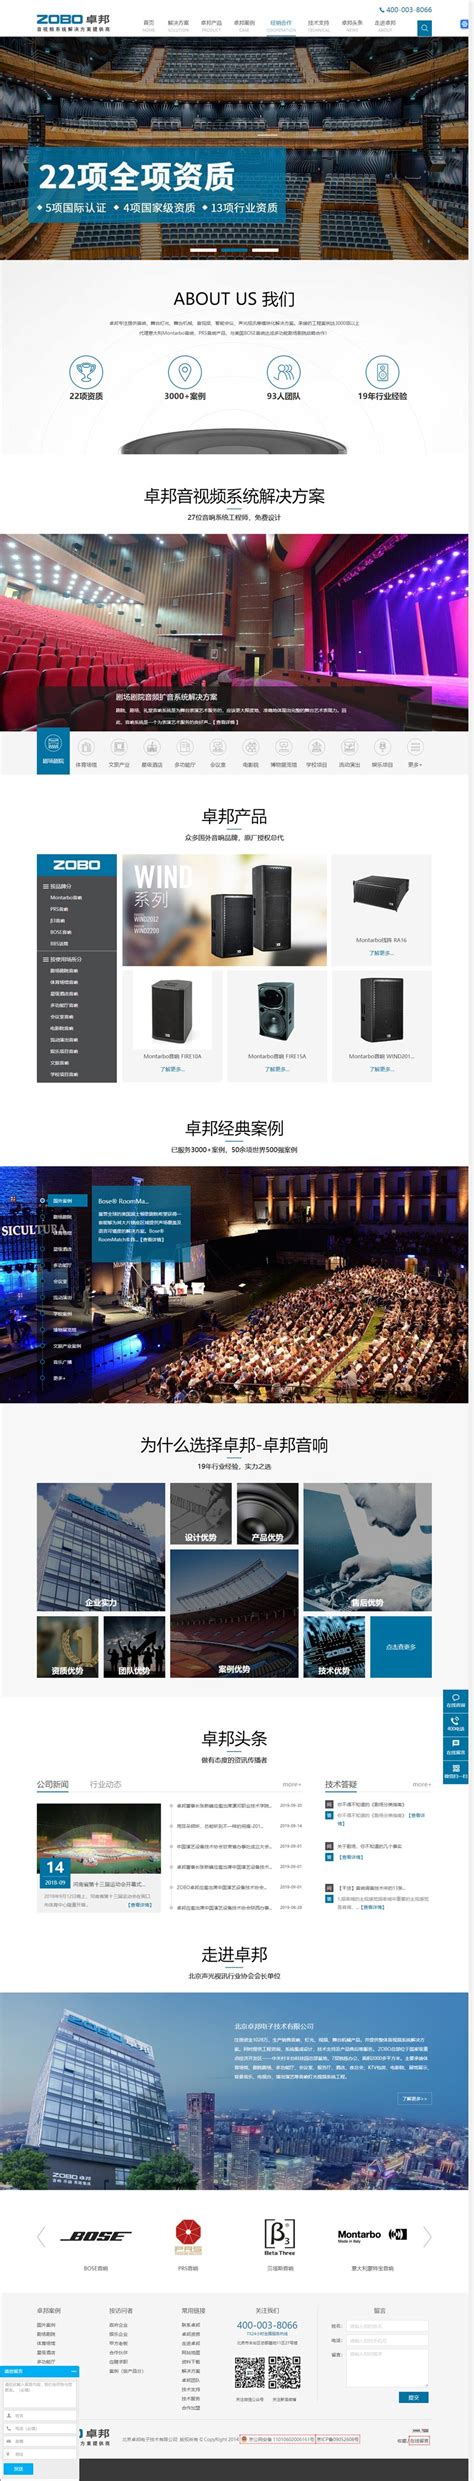 徳亦达企业管理咨询英文网站设计-网站设计低价格好品质-正版建站平台